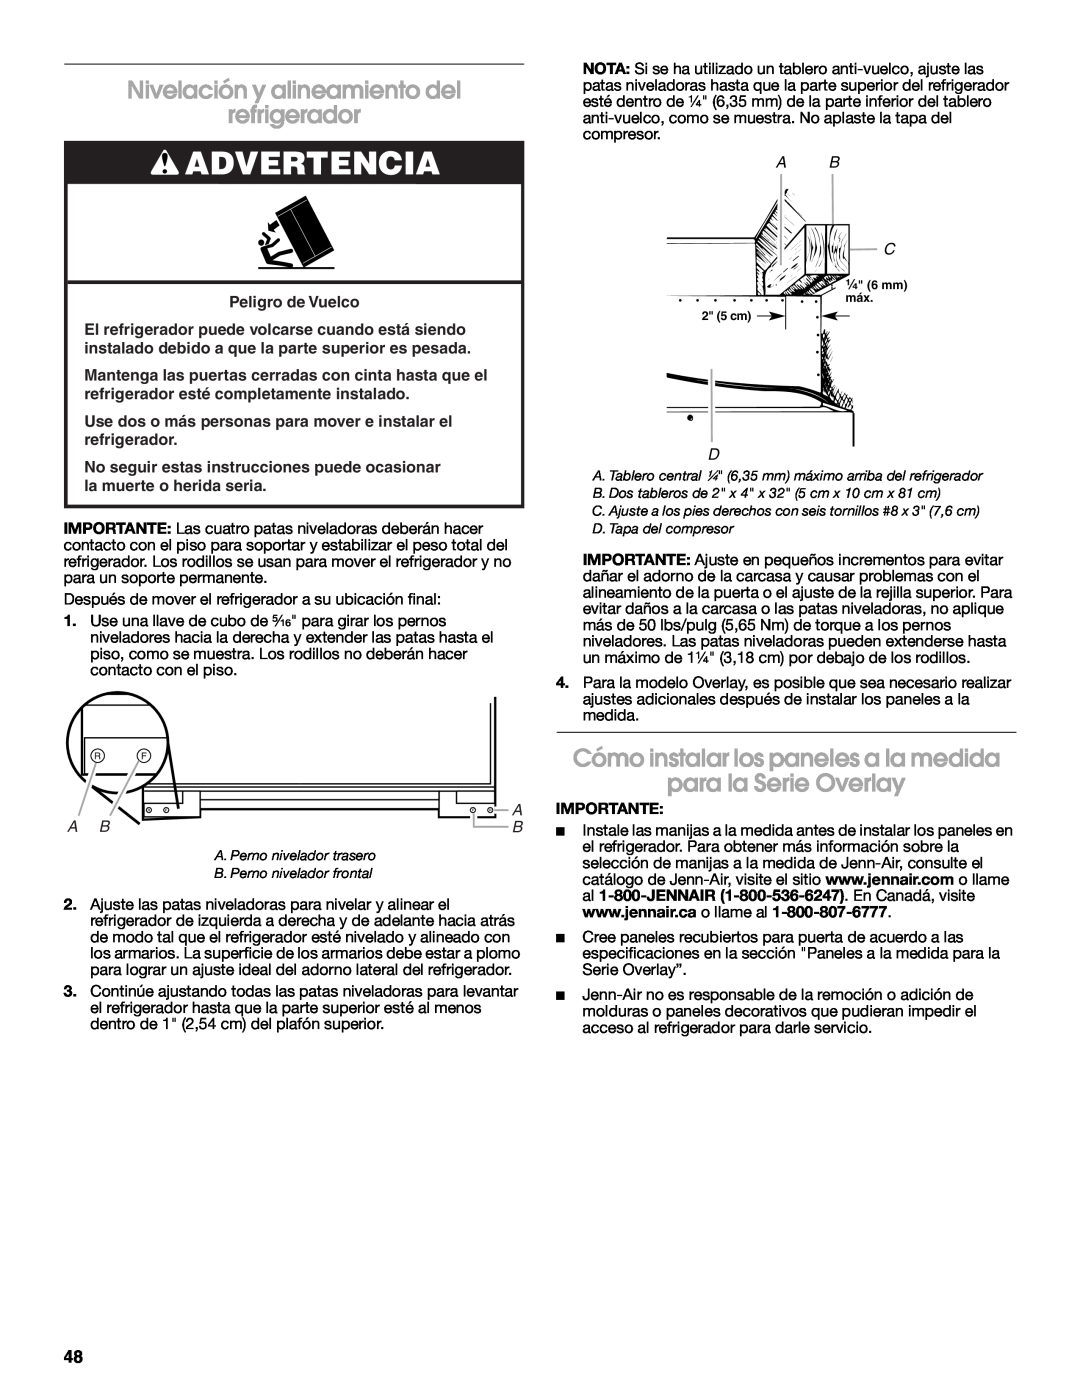 Jenn-Air W10183782A manual Nivelación y alineamiento del refrigerador, Advertencia, A B C, Importante 